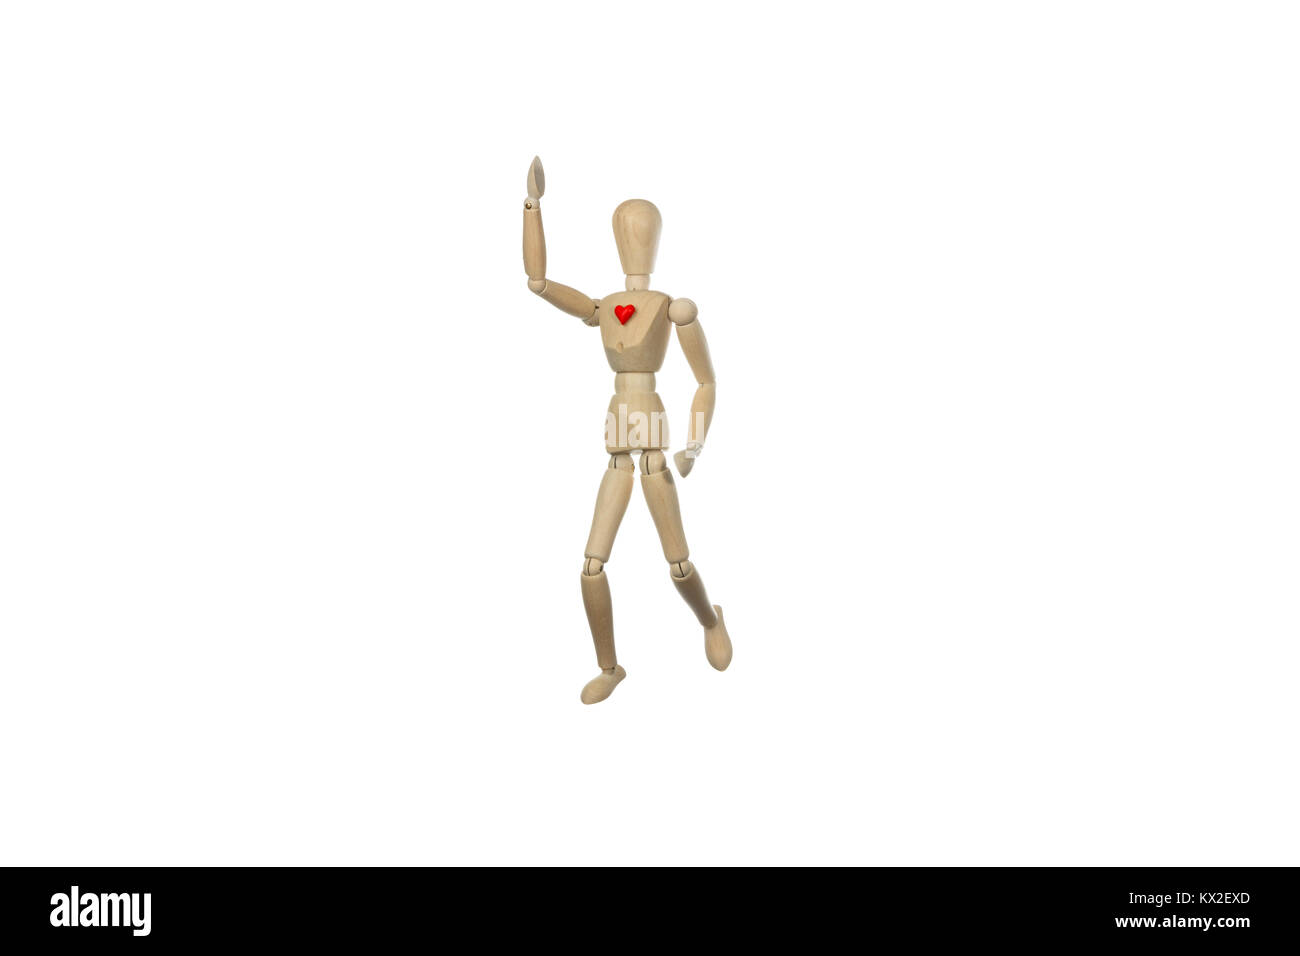 Mannequin de Bois à marcher avec un cœur rouge, photo conceptuelle sur les saines habitudes de vie pratique d'un sport Banque D'Images